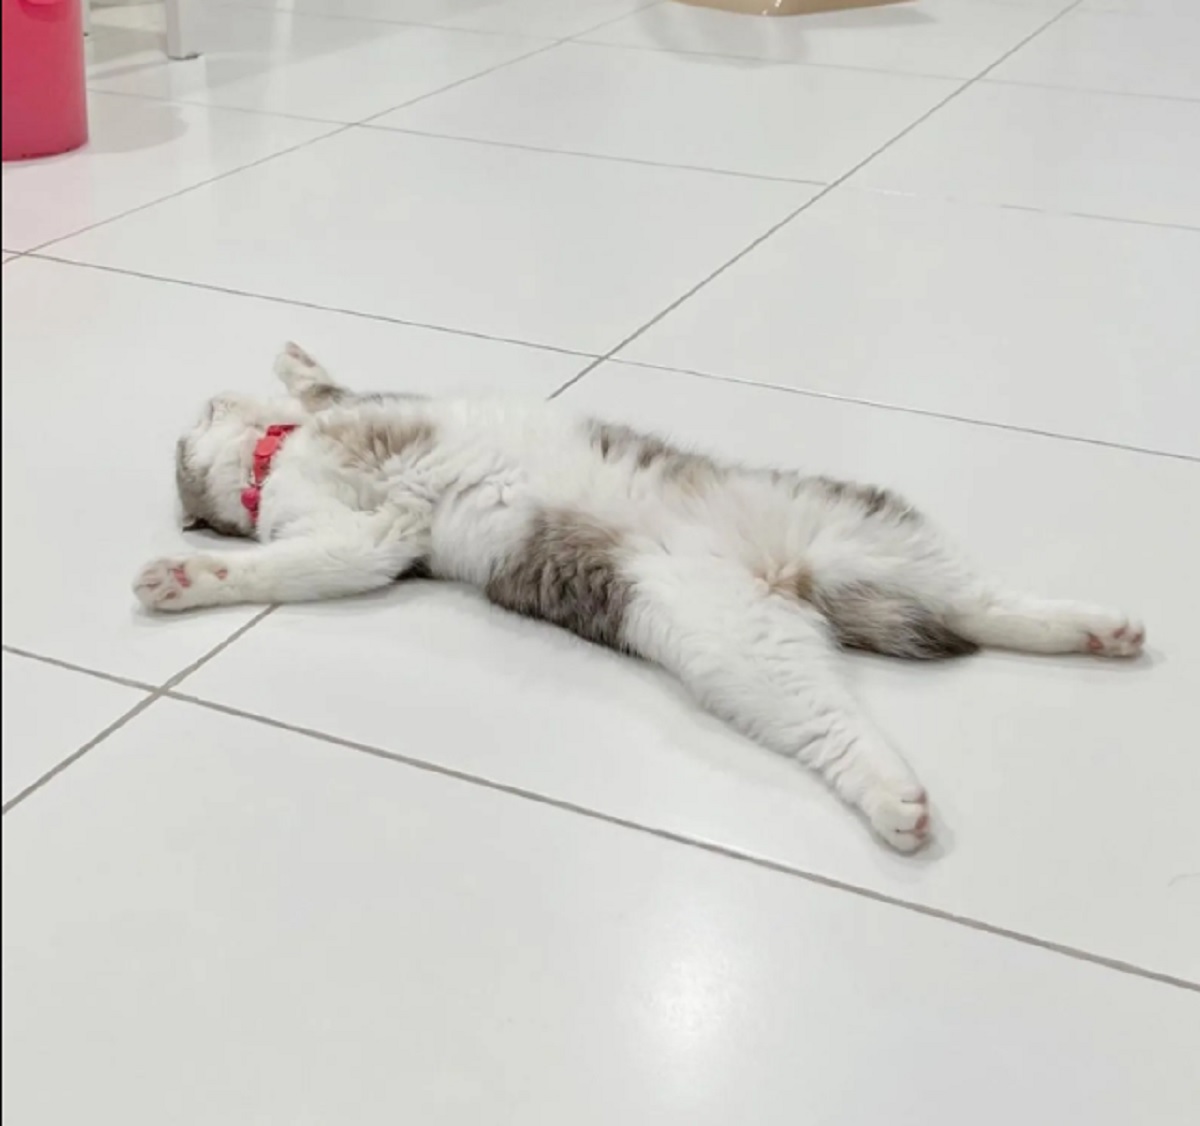 Kenapa Kucing Suka Tidur di Lantai? Yuk Kenali 7 Faktor Yang Membuat Kucing Nyaman Tidur di Lantai